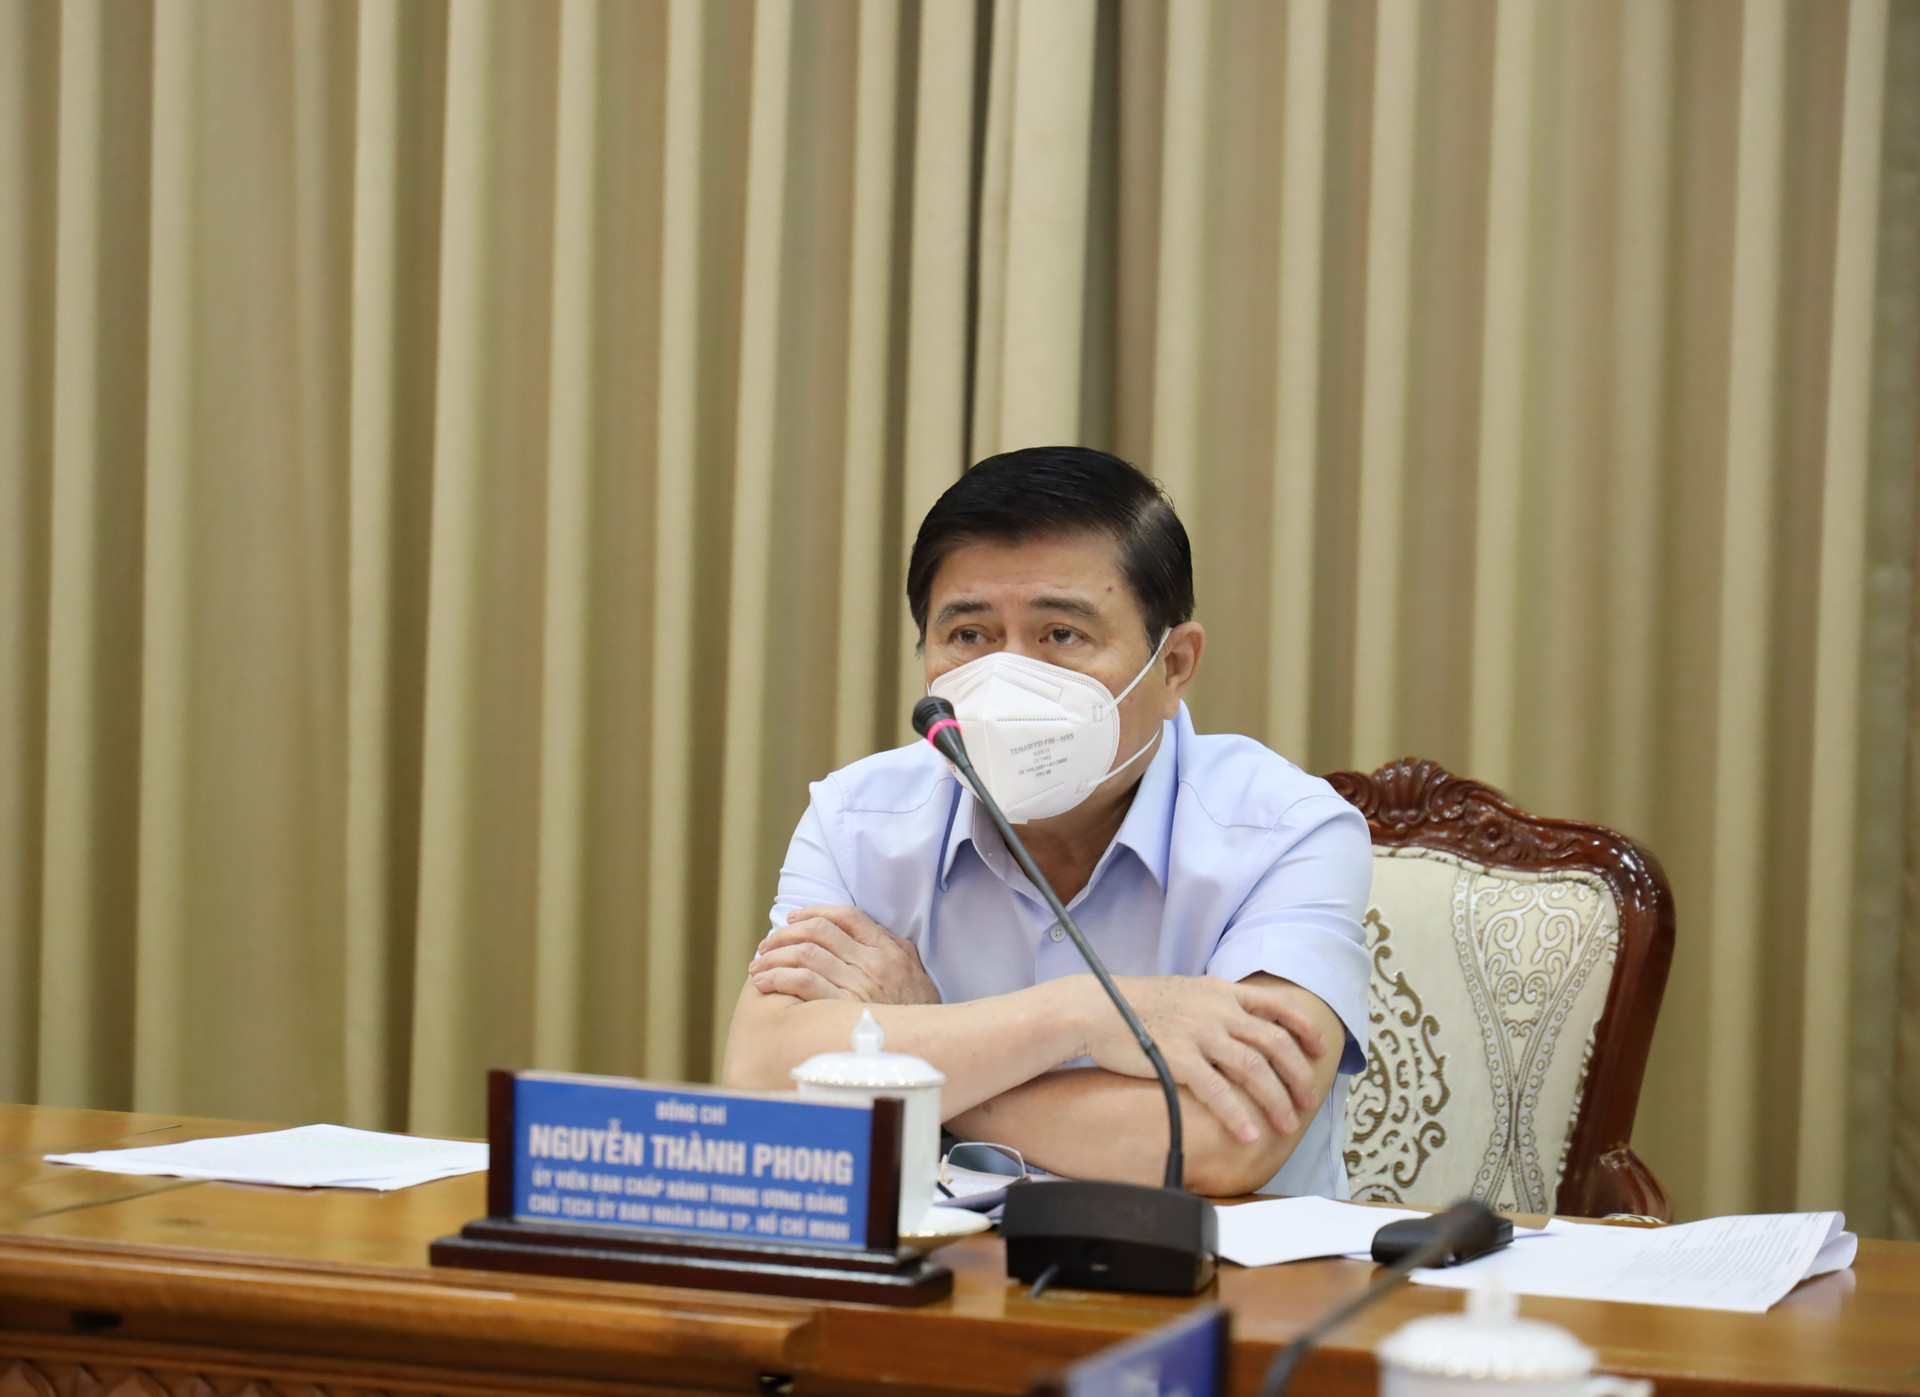 Chủ tịch UBND TP HCM Nguyễn Thành Phong cảm ơn các đội, y bác sĩ tham gia chống dịch